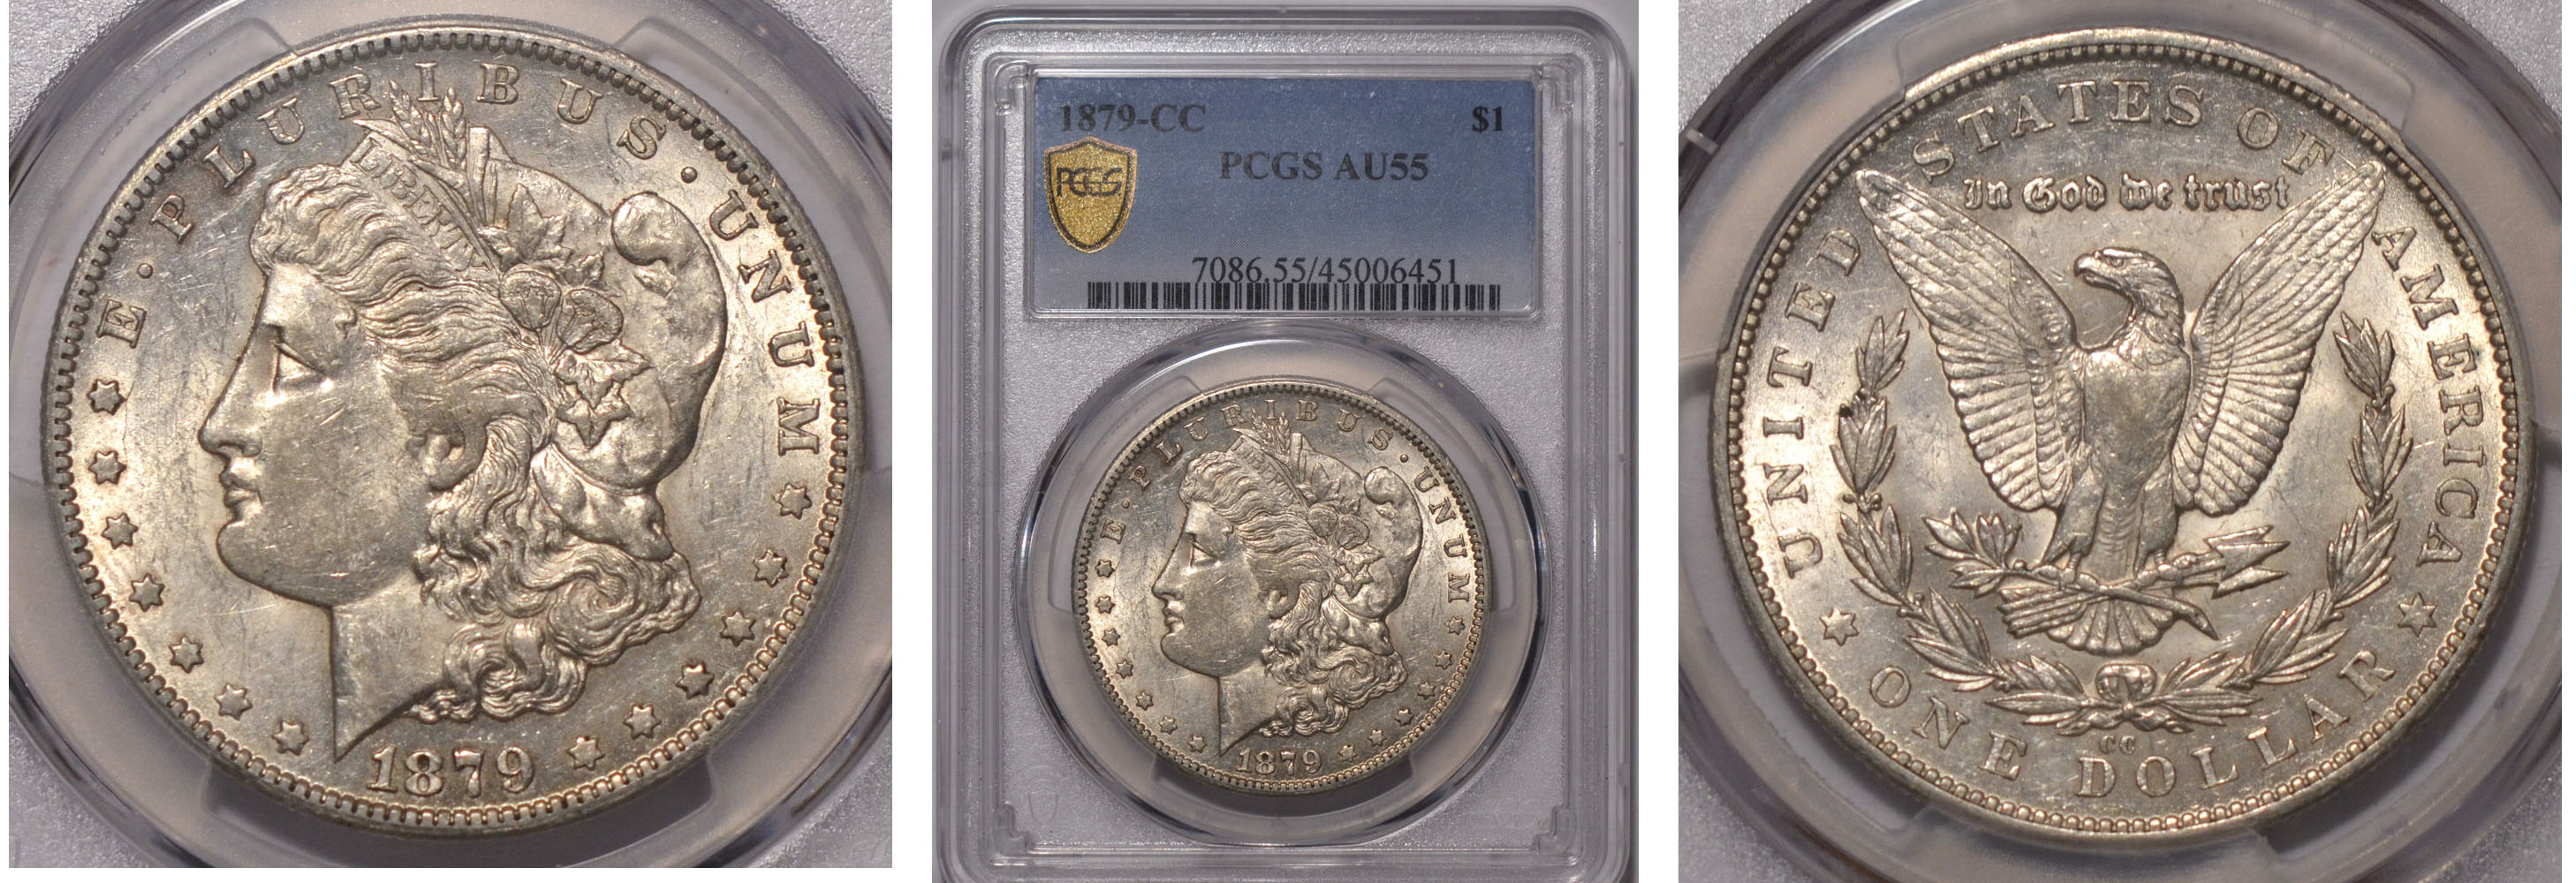 1879cc Morgan Silver Dollar $1 PCGS AU55